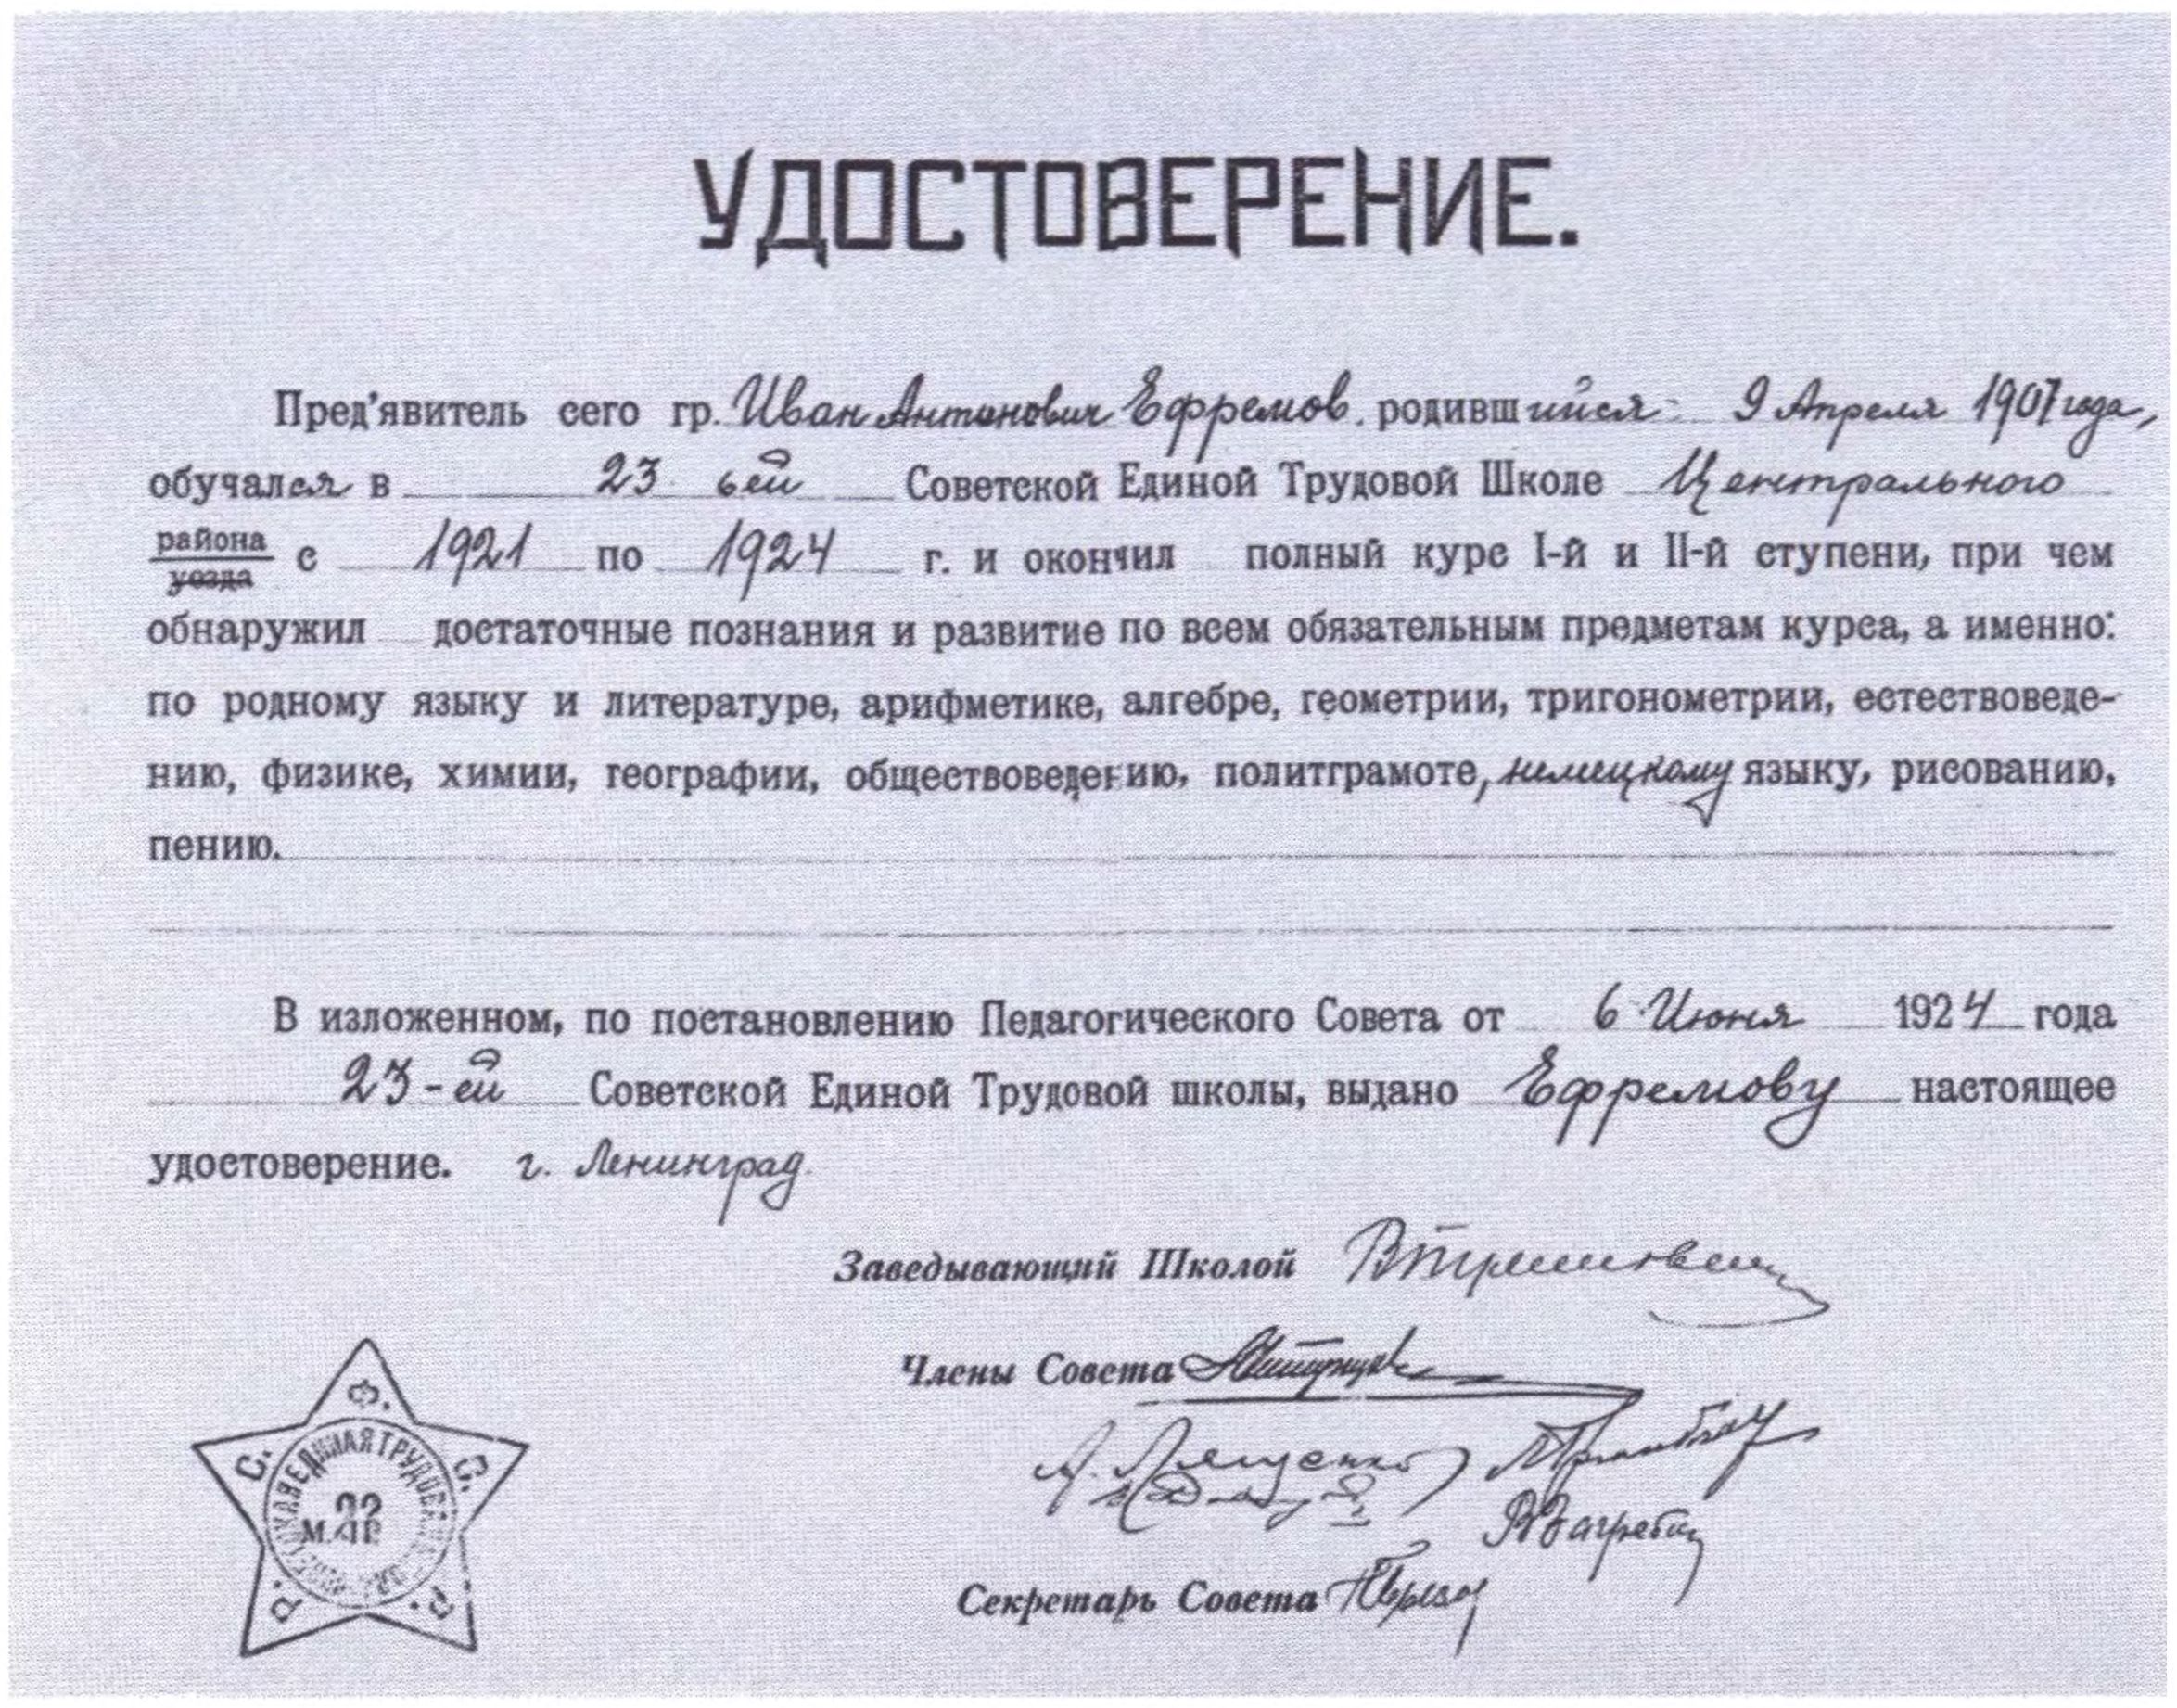 Удостоверение об окончании шкоды. 1924 г